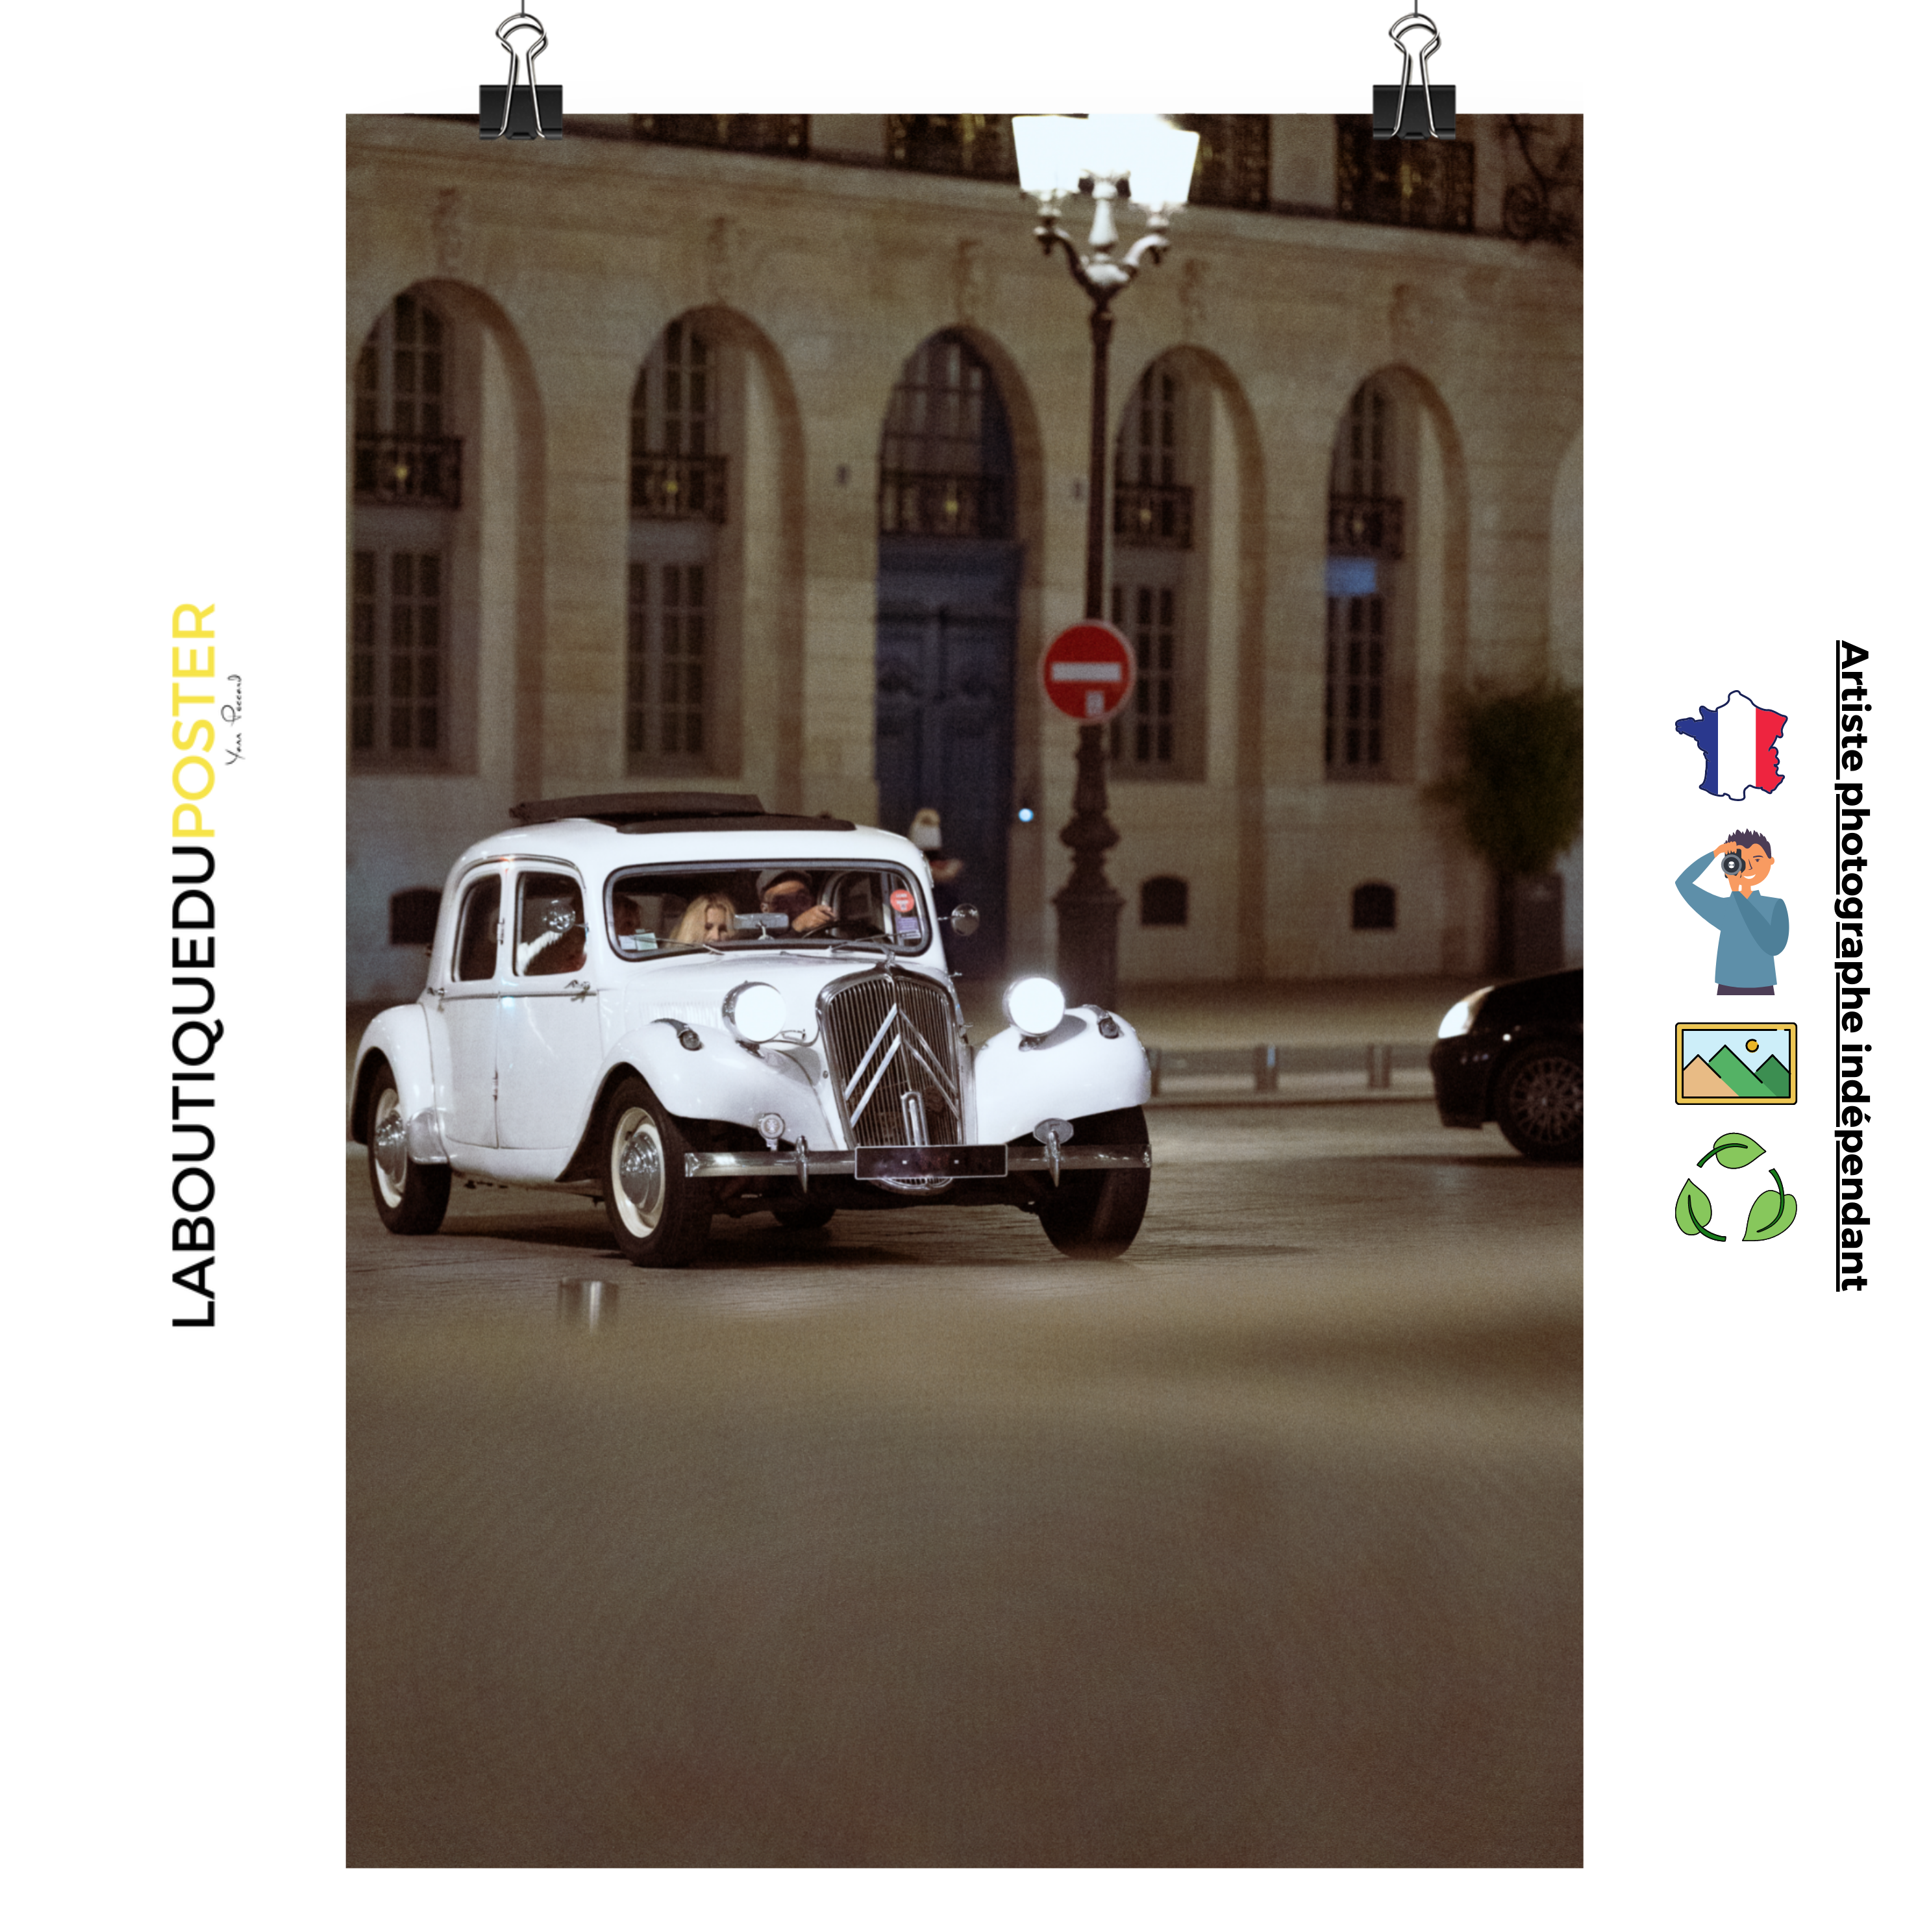 Poster mural - Citroën traction – Photographie de vielle voiture – Poster photo, poster XXL, Photo d’art, photographie murale et des posters muraux des photographies de rue unique au monde. La boutique de posters créée par un Photographe français.